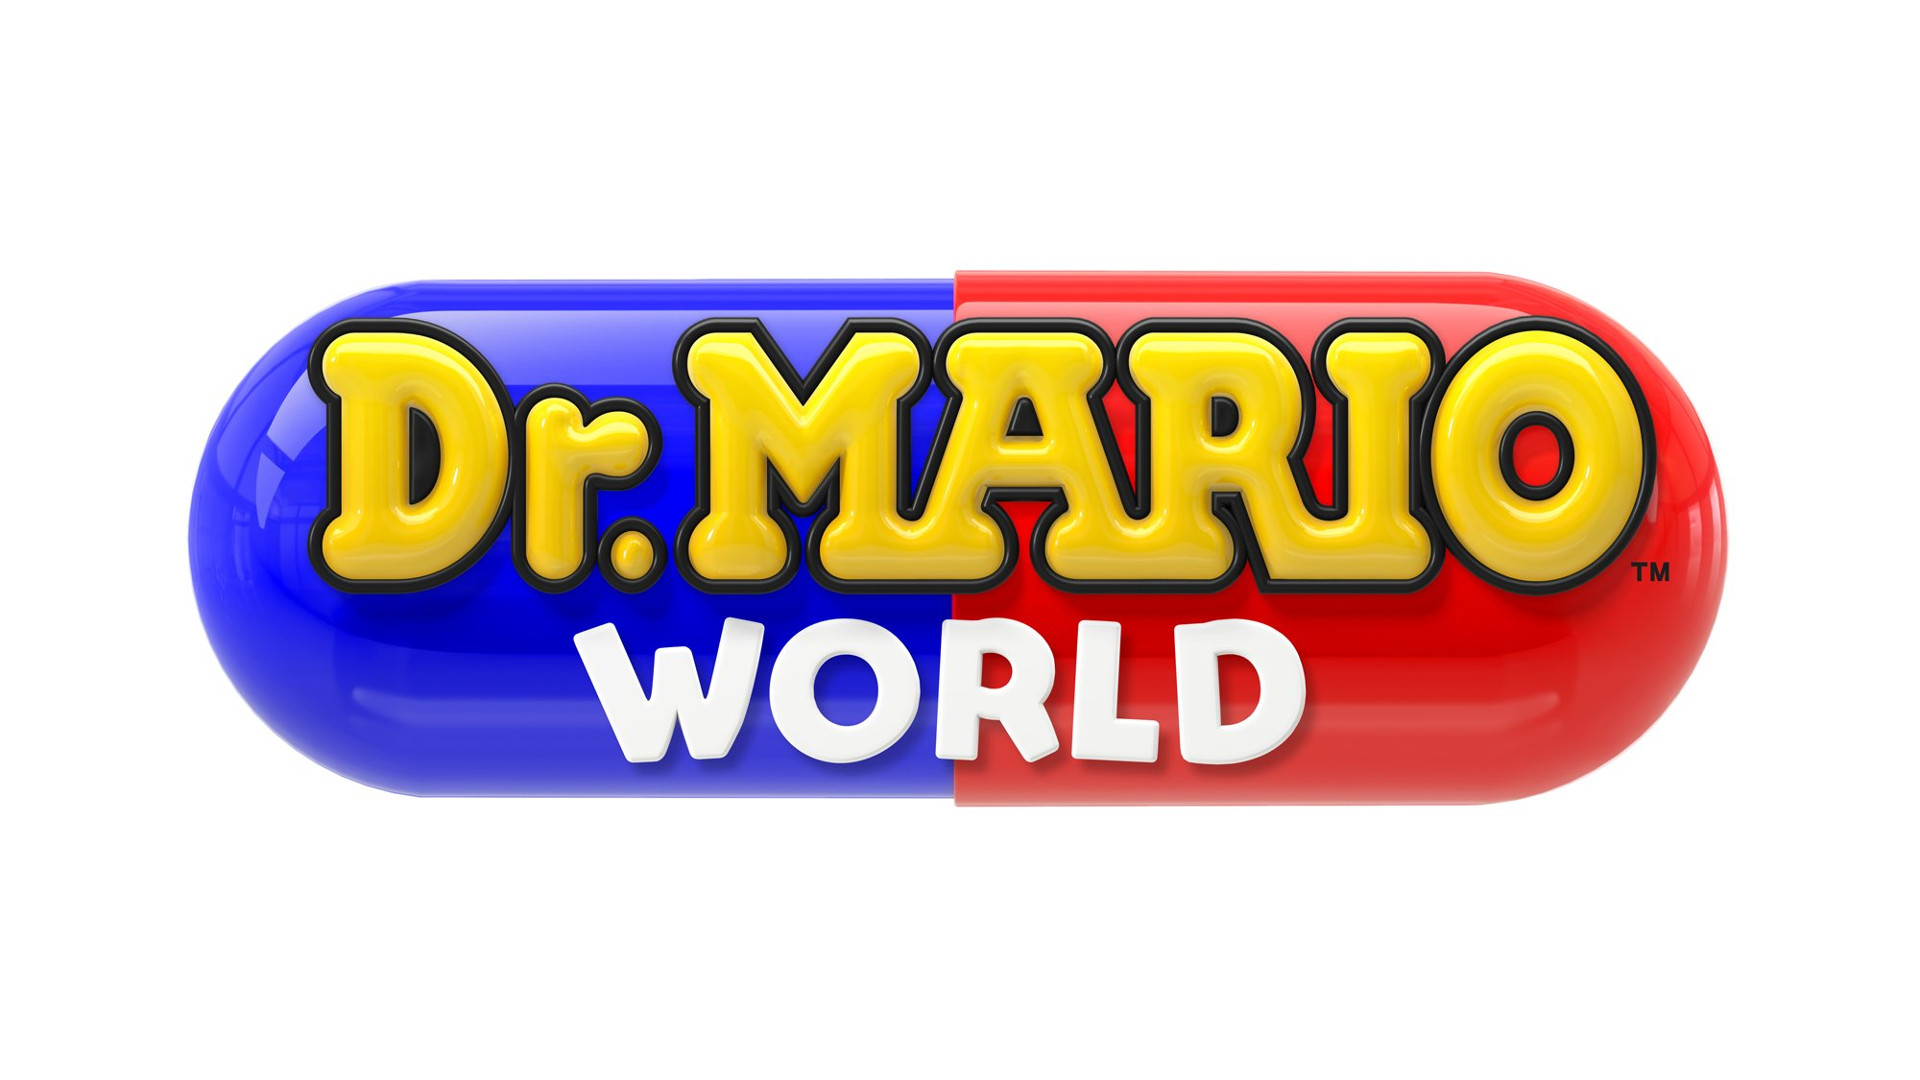 The Dr. Mario World logo.